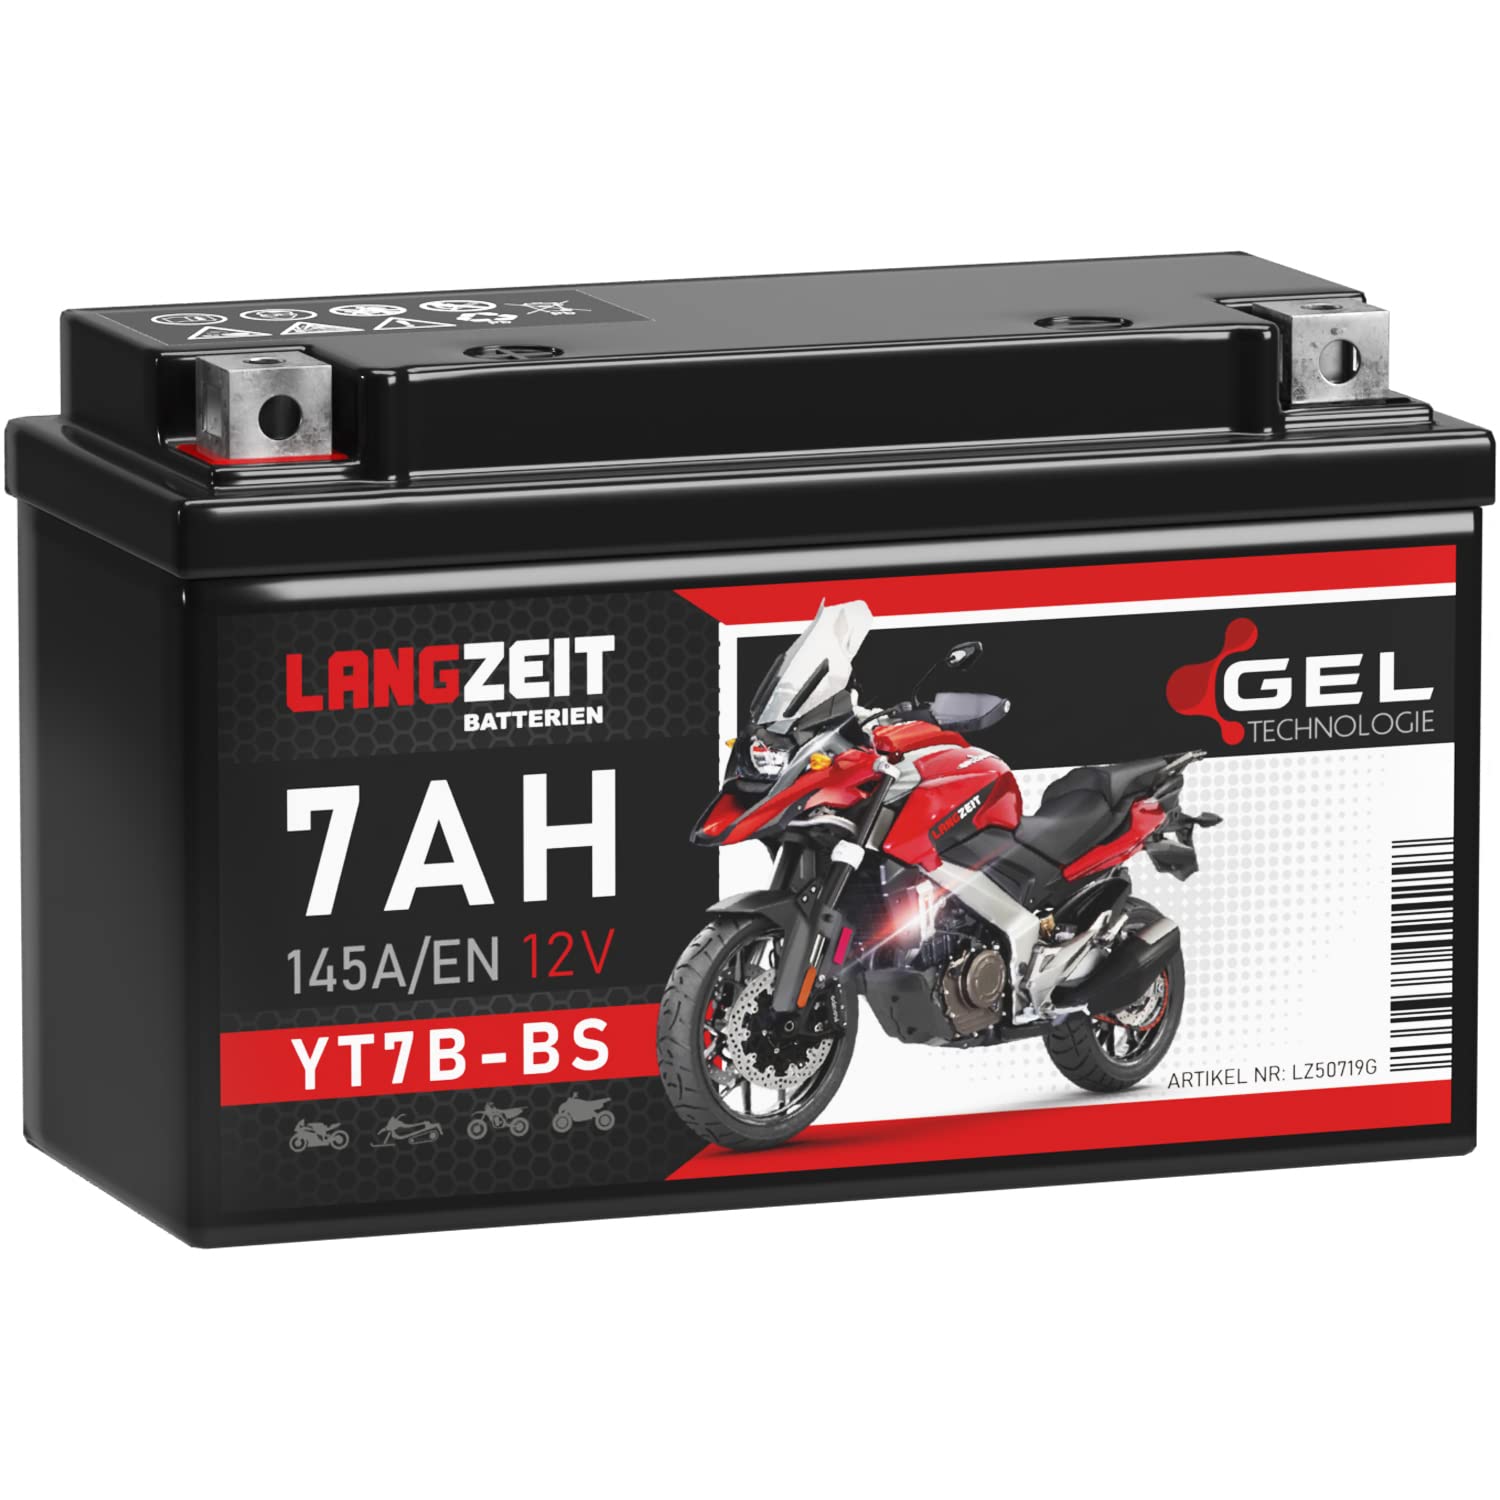 LANGZEIT YT7B-BS Motorradbatterie GEL 12V 7Ah 145A/EN 50719 YT7B-4 GT7B-4 CT7B4 FT7B4 EB7B-BS 507 901 012 Batterie 12V doppelte Lebensdauer vorgeladen auslaufsicher wartungsfrei von LANGZEIT Batterien